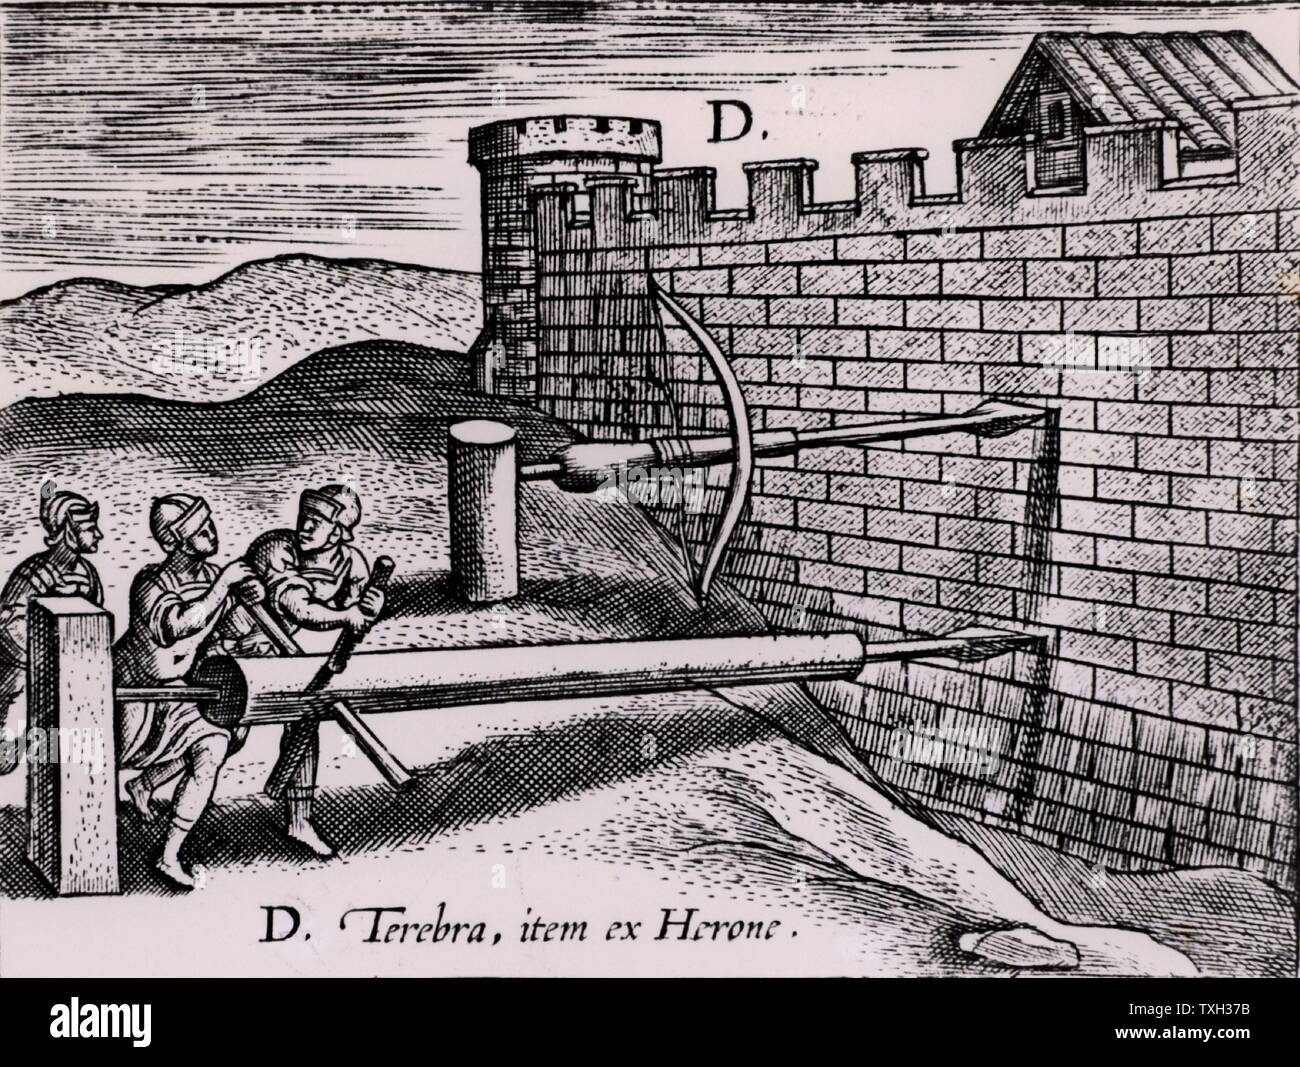 Zwei Formen der Schnecke von den Römern in belagerungskrieges verwendet in die Mauer einer Festung zu bohren. Von "Poliorceticon sive de machinis tormentis Telis" von Justus Lipsius (Joost Lippen) (Antwerpen, 1605). Gravur. Stockfoto